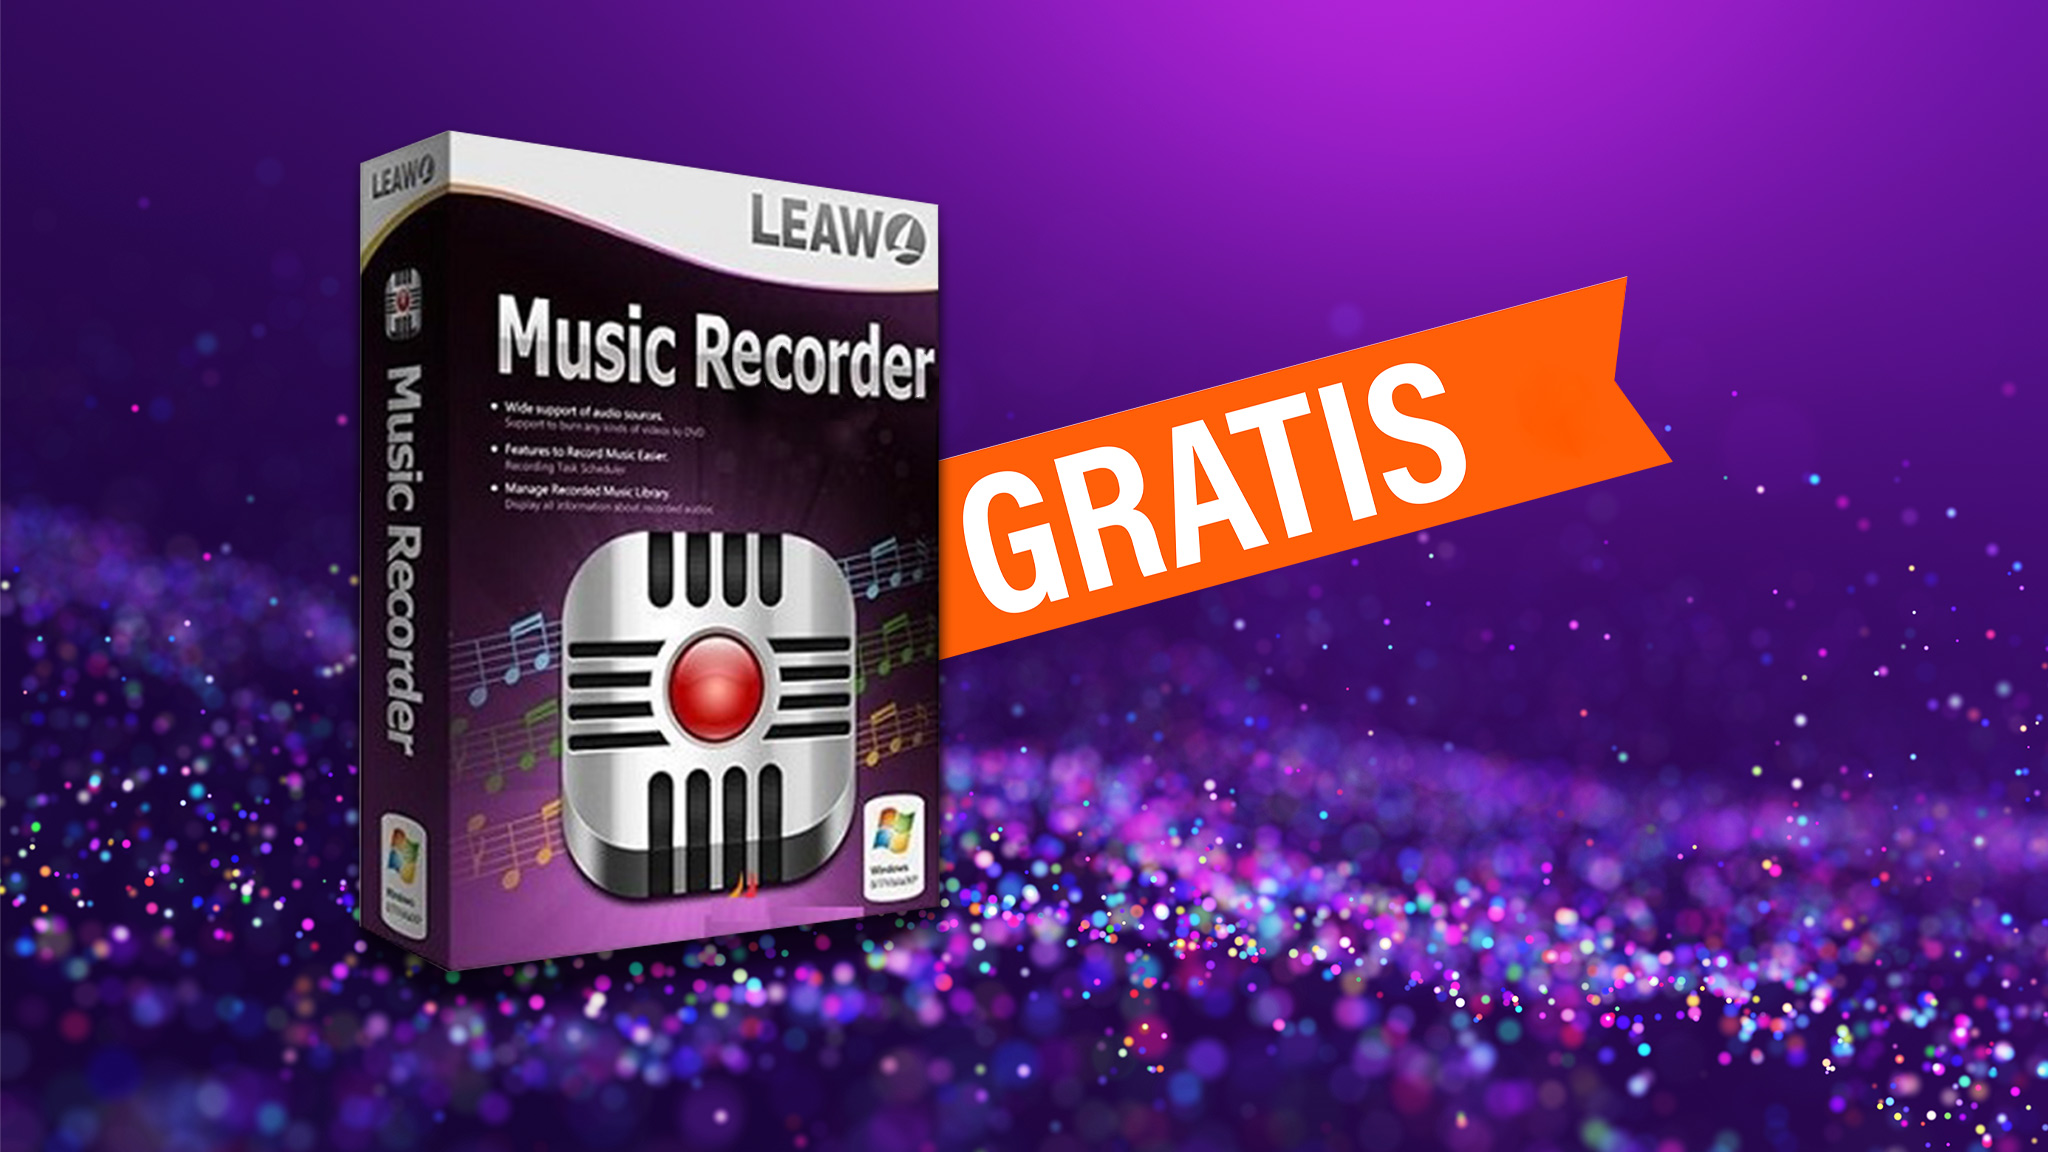 Leawo: Music Recorder gratis statt 18 Euro